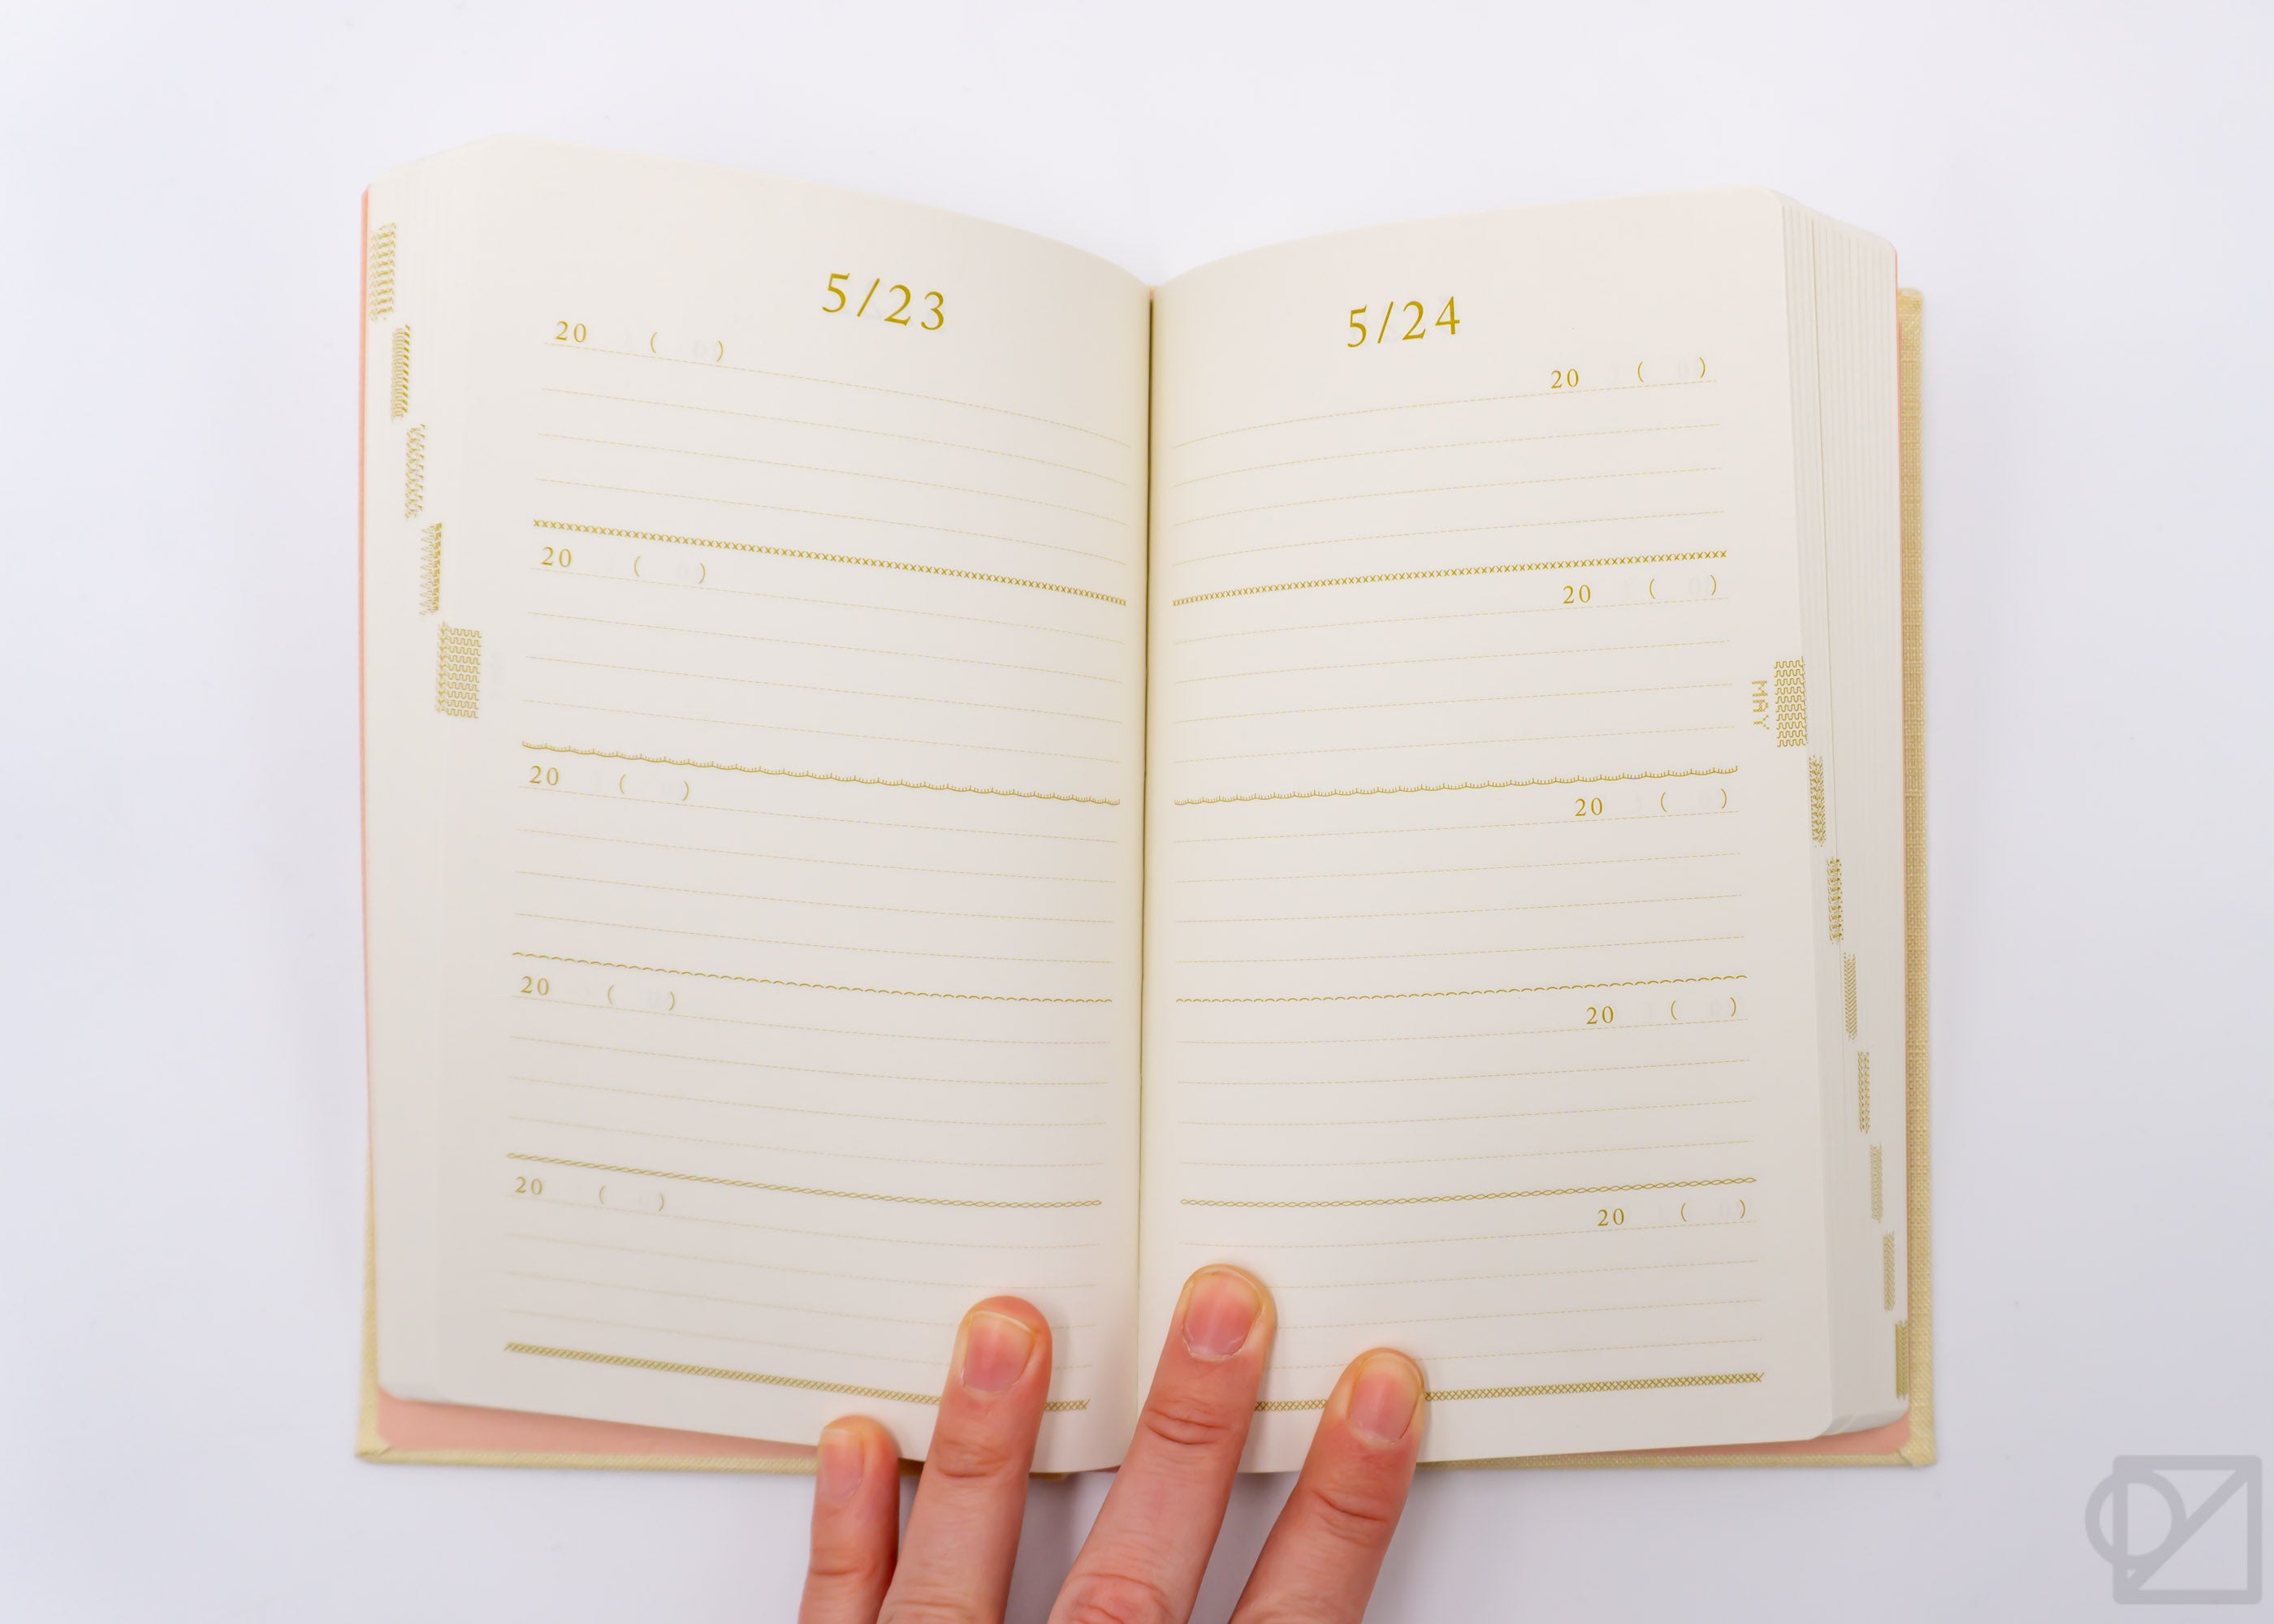 Midori Five Year Diary - Midori - Notebooks - Stationery